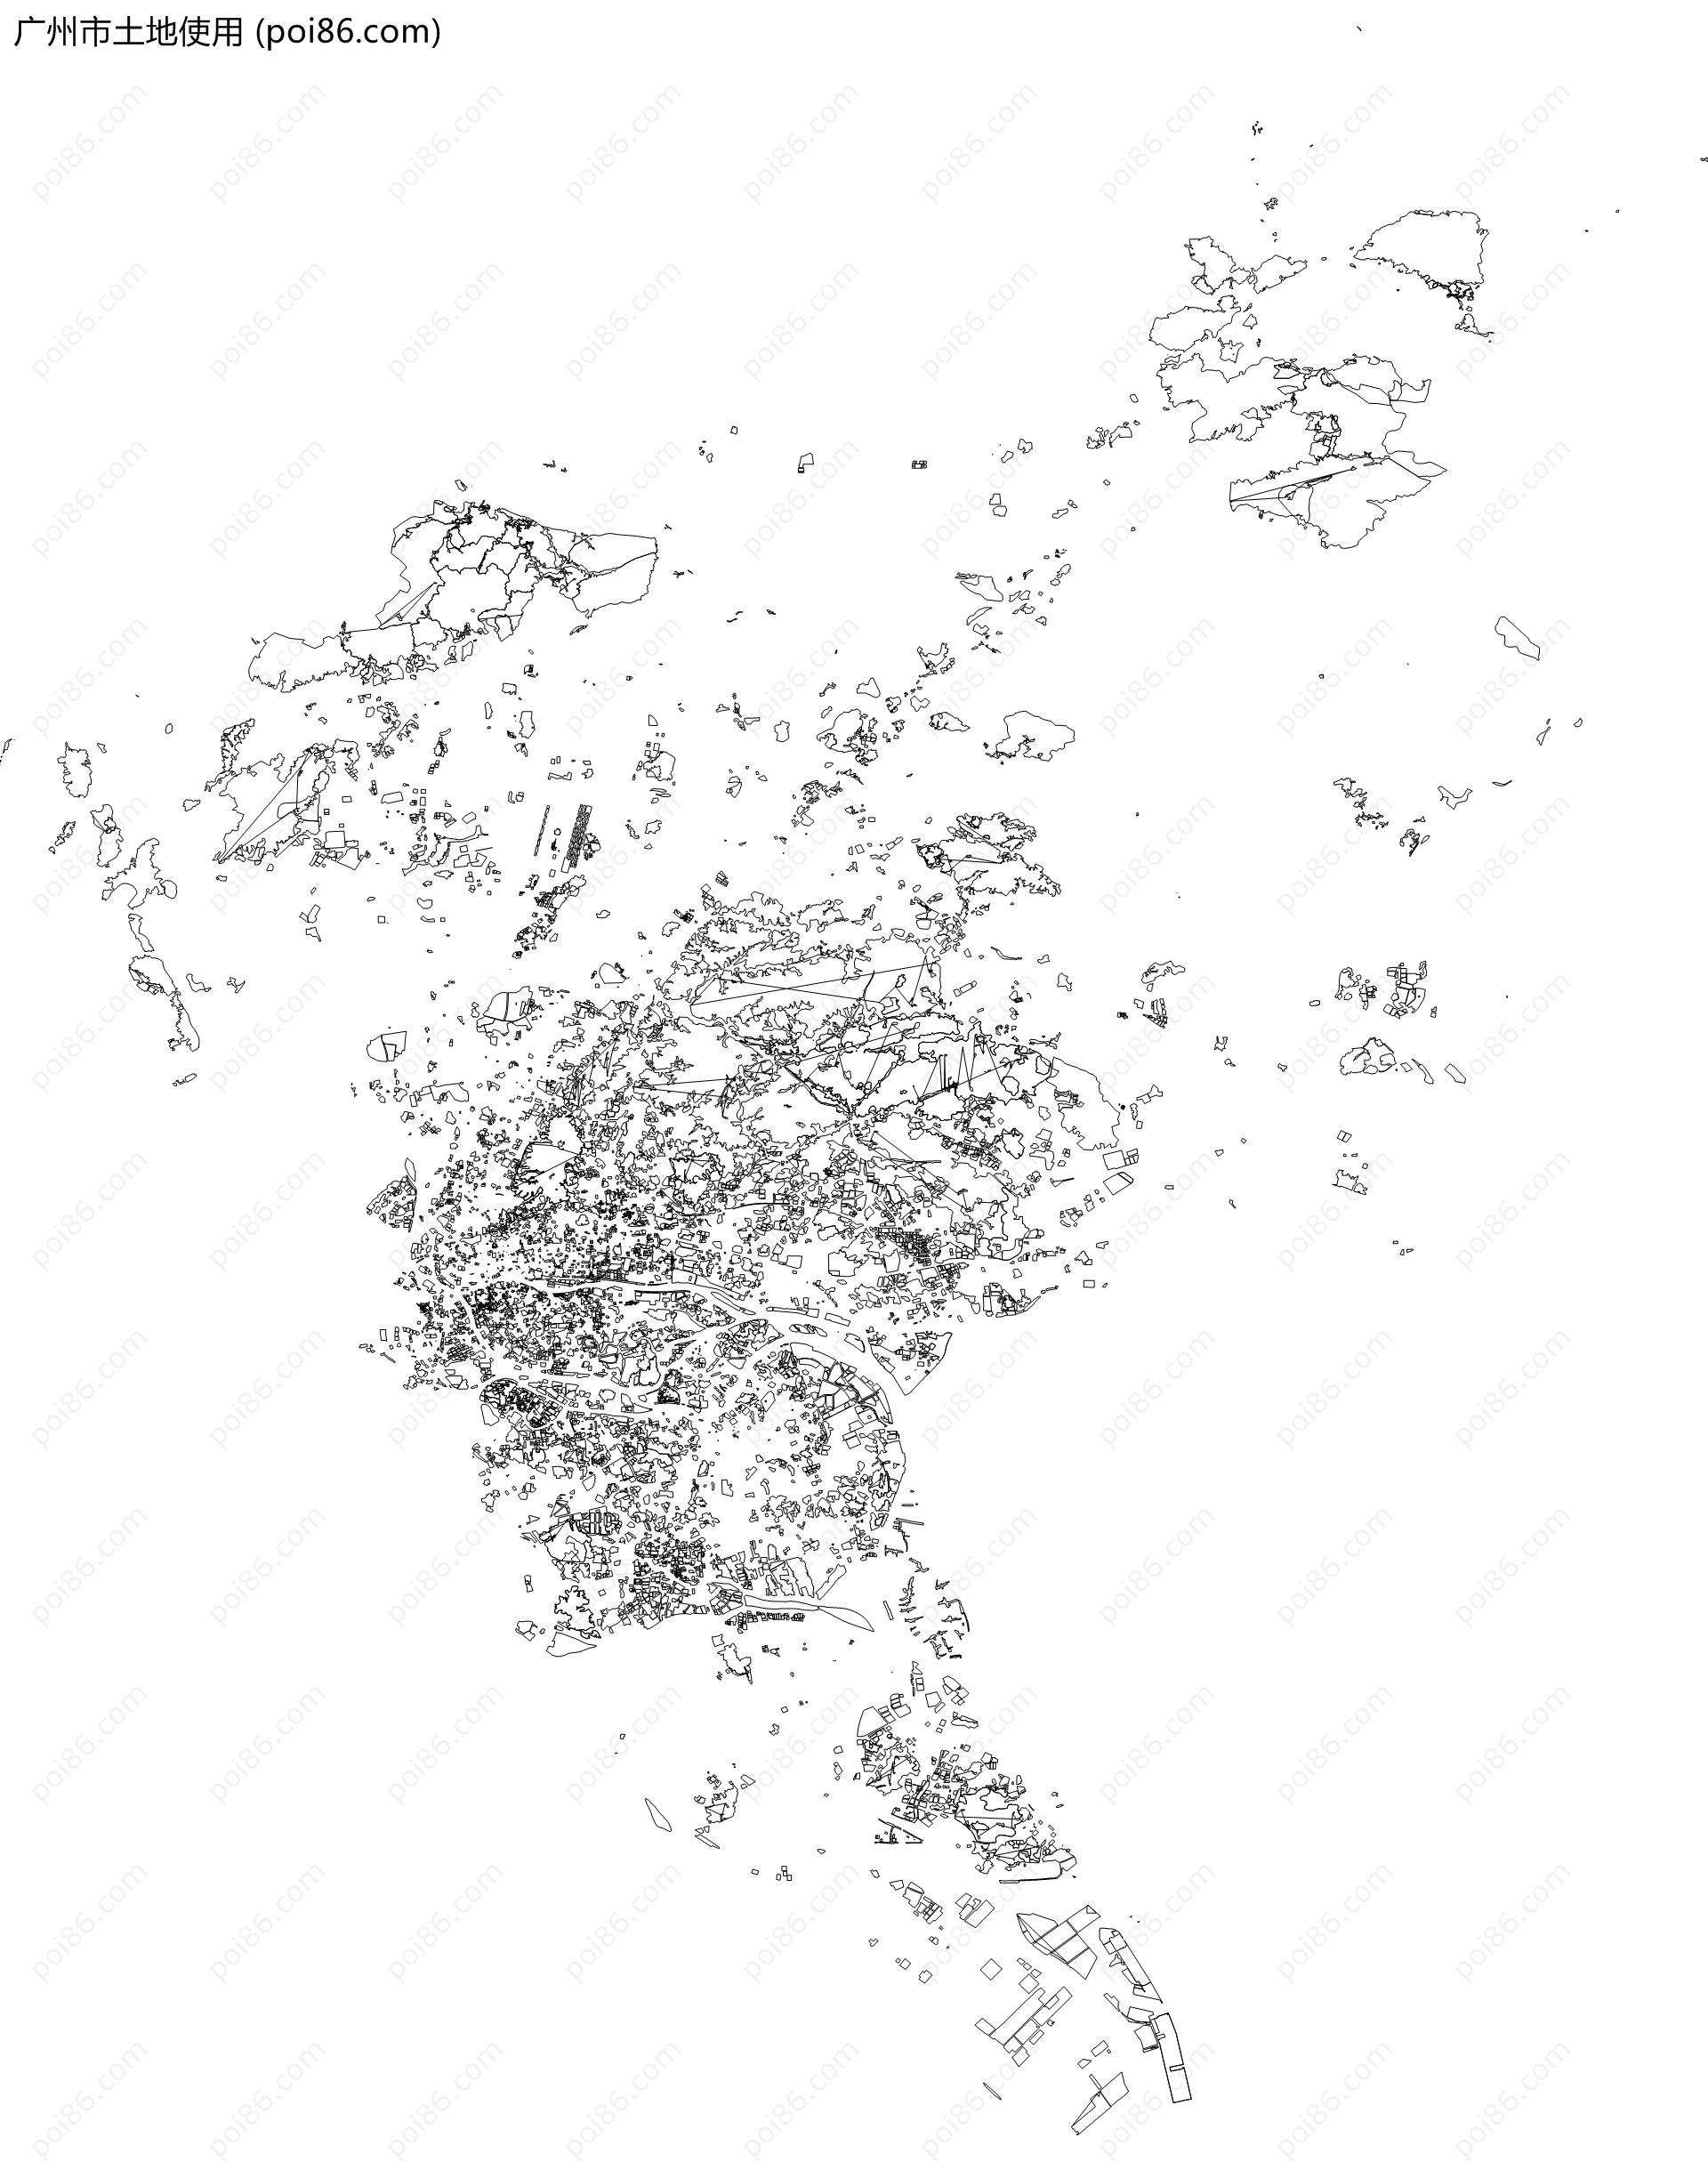 广州市土地使用地图